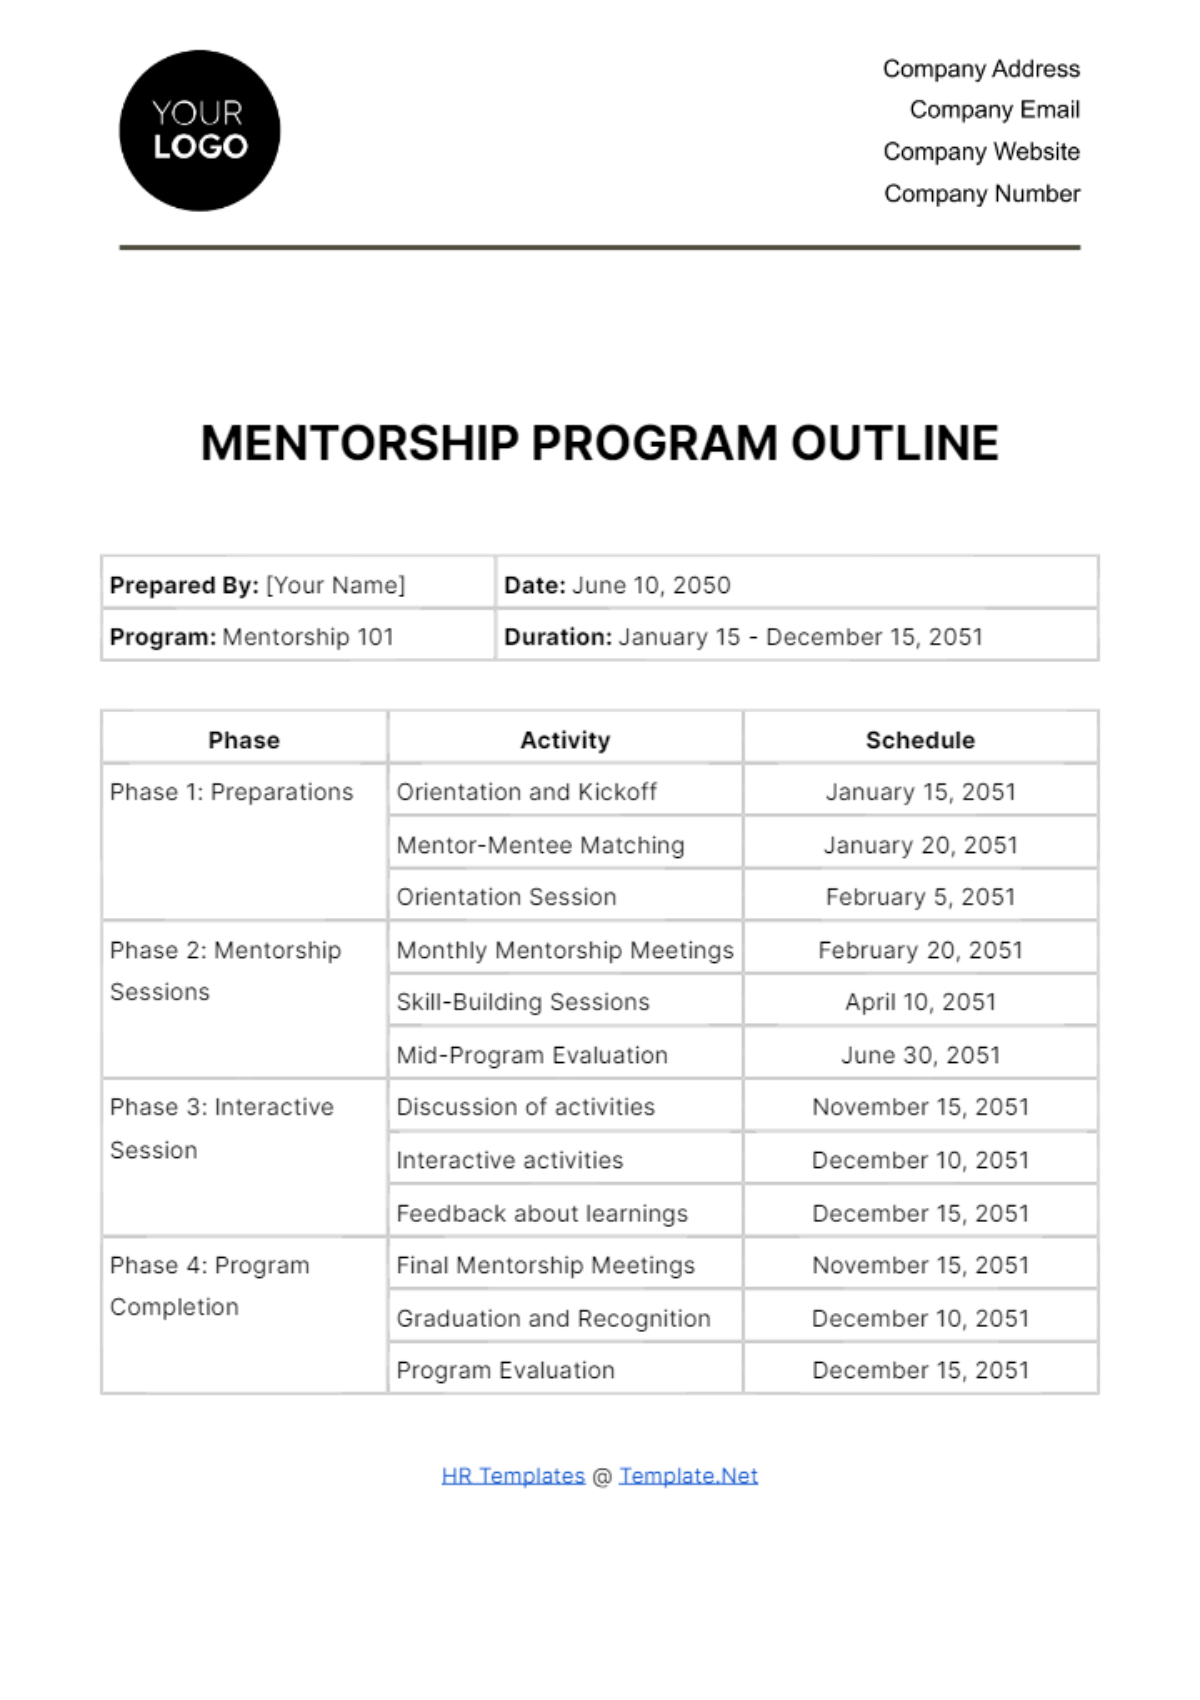 Mentorship Program Outline HR Template